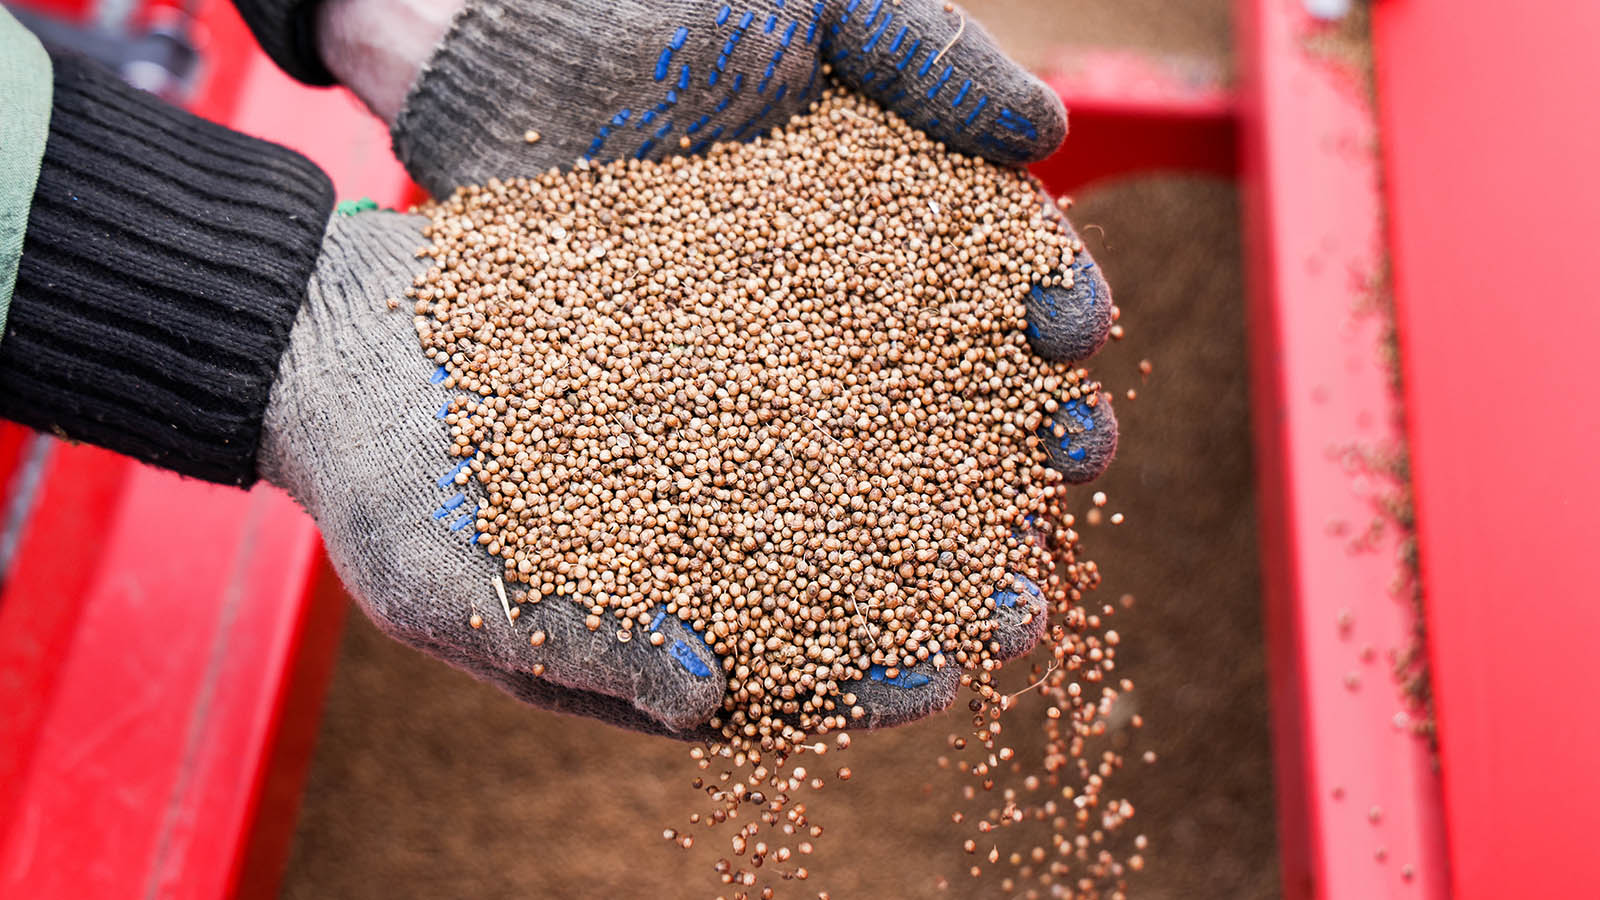 Липа вместо кукурузы: зачем аграрии покупают контрафактные семена и химию